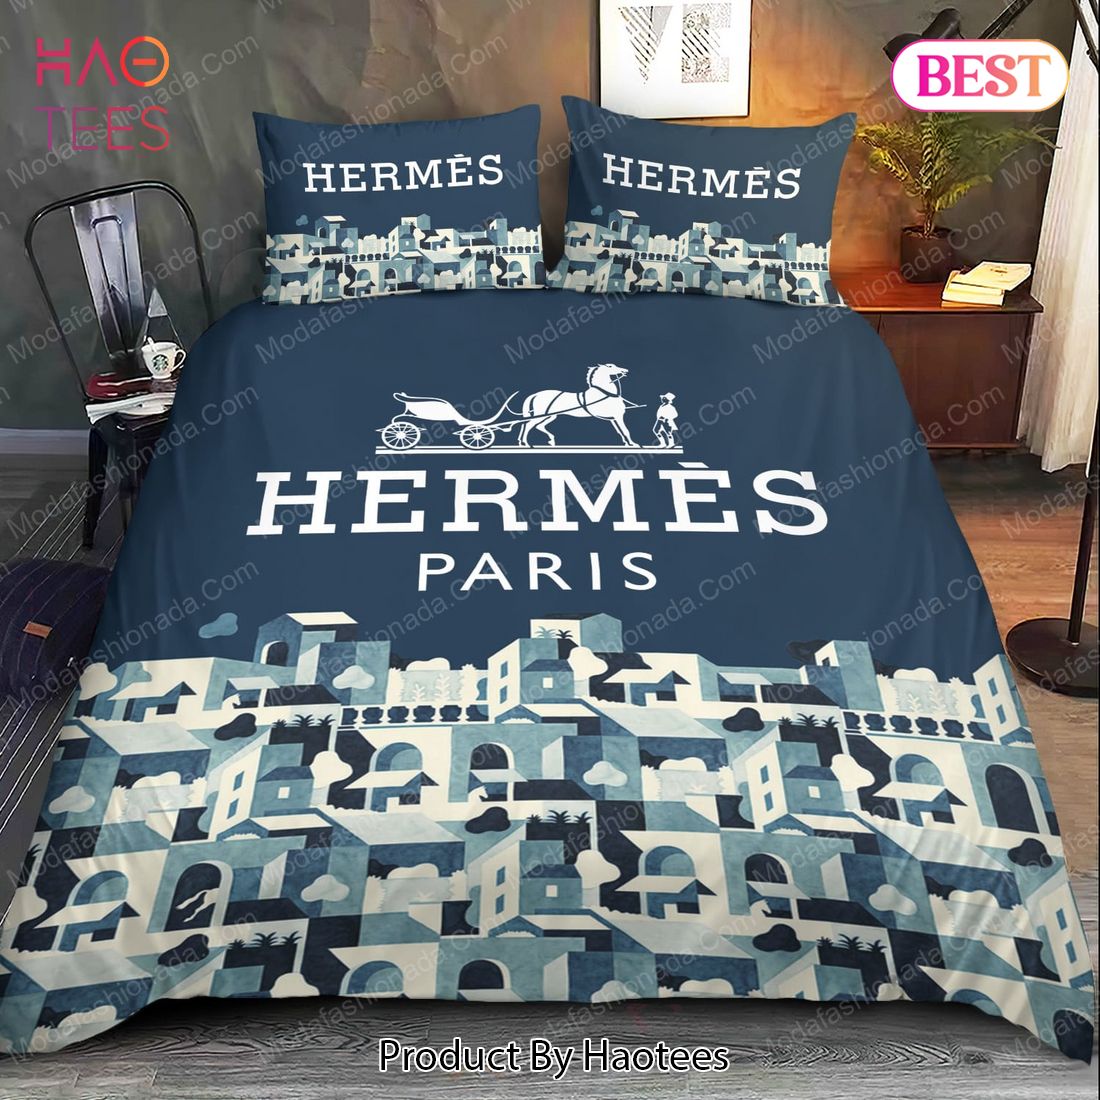 Buy Herms Paris Bedding Sets Bed Sets, Bedroom Sets, Comforter Sets, Duvet Cover, Bedspread